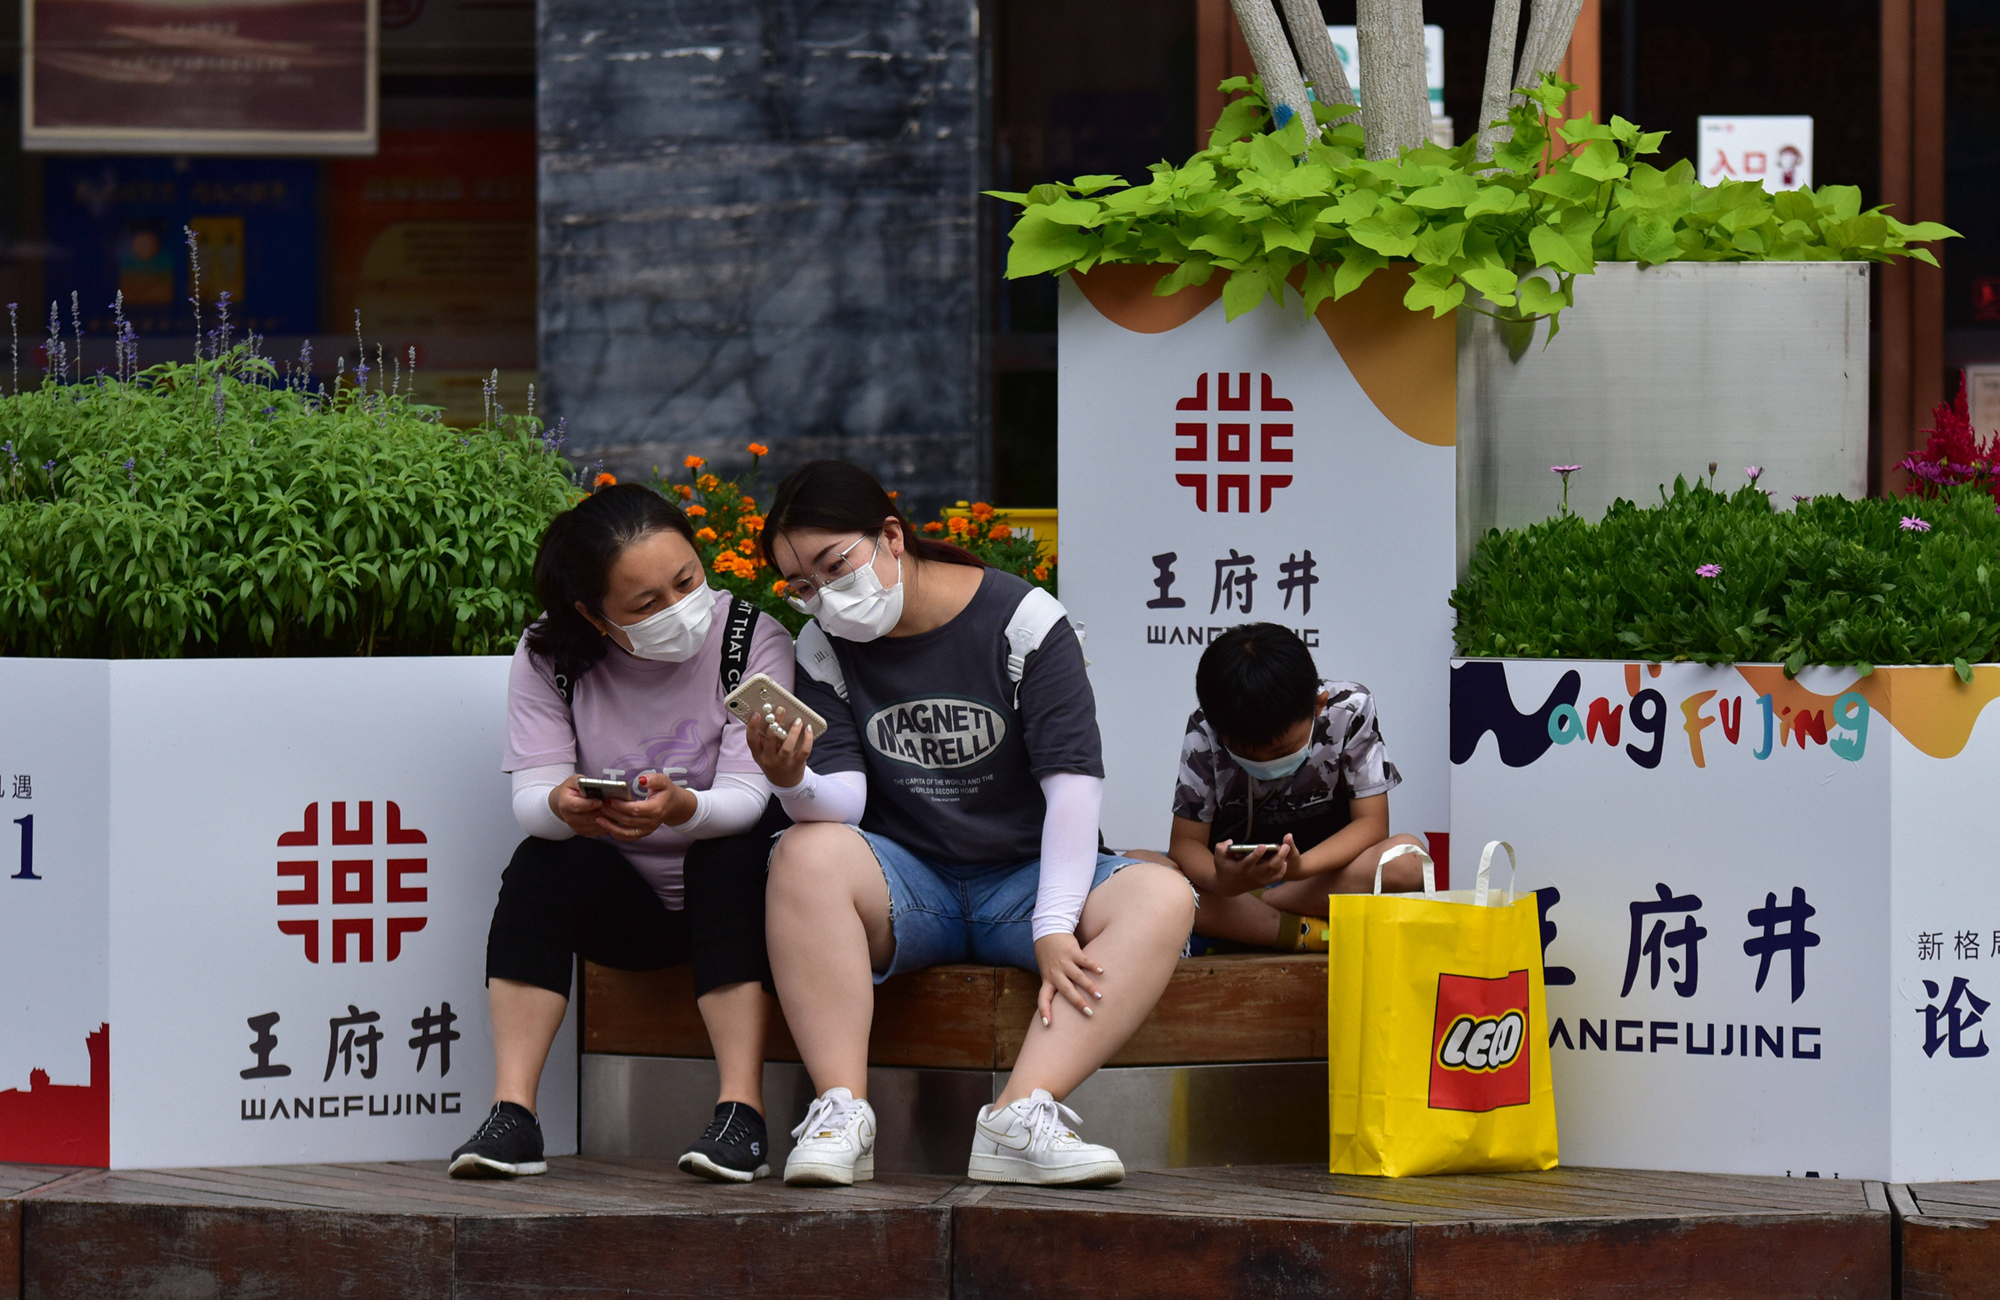 Der stationäre Handel in der Einkaufsmeile Wangfujing in Peking ist bei Touristen noch gefragt. Foto: IMAGO / ZUMA Wire (Sheldon Cooper)